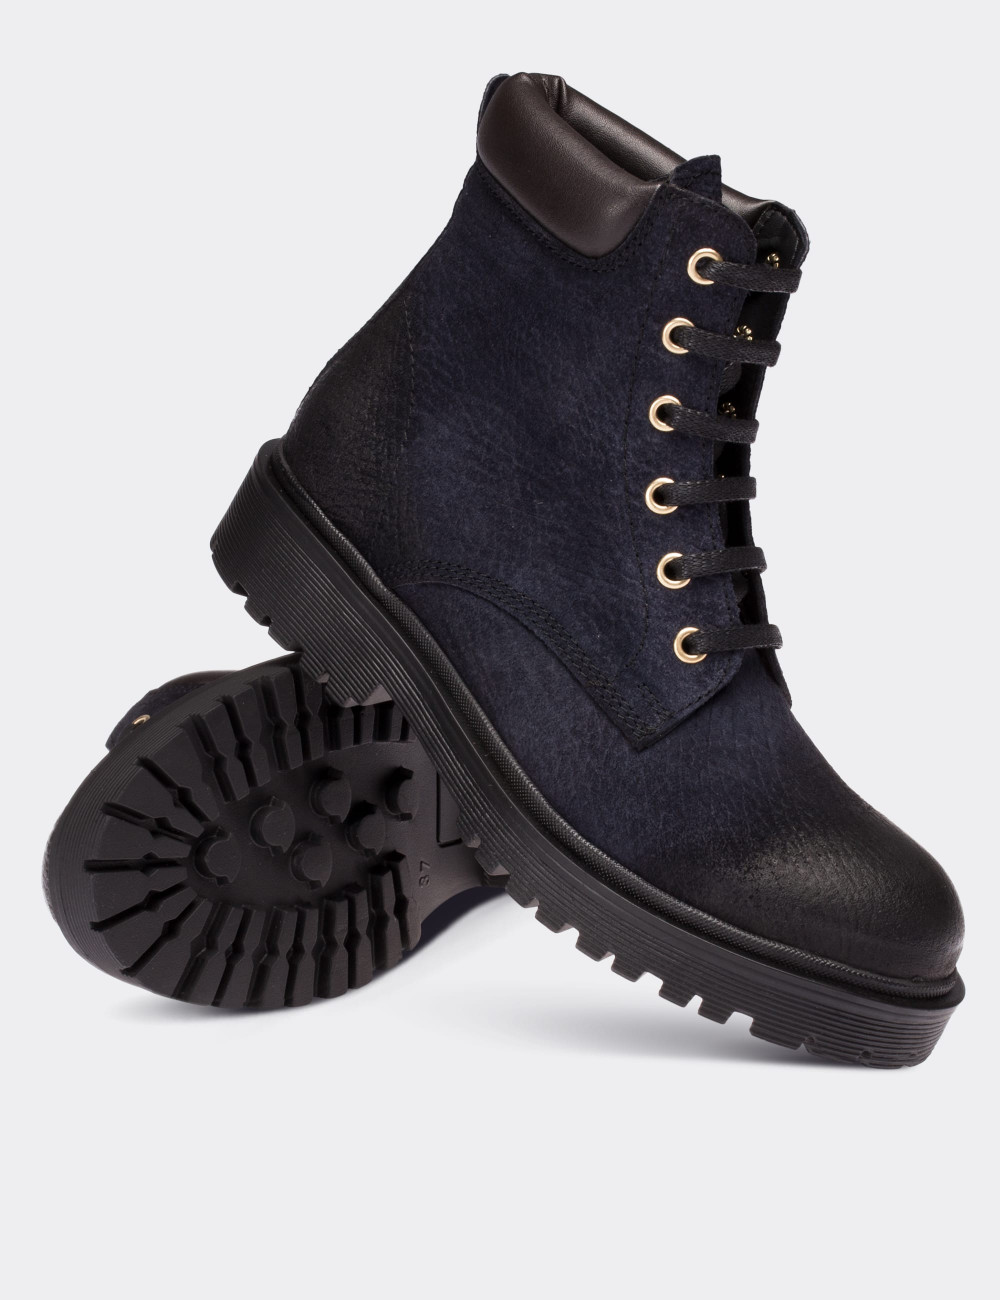 Navy Nubuck Leather  Boots - 01808ZLCVC01